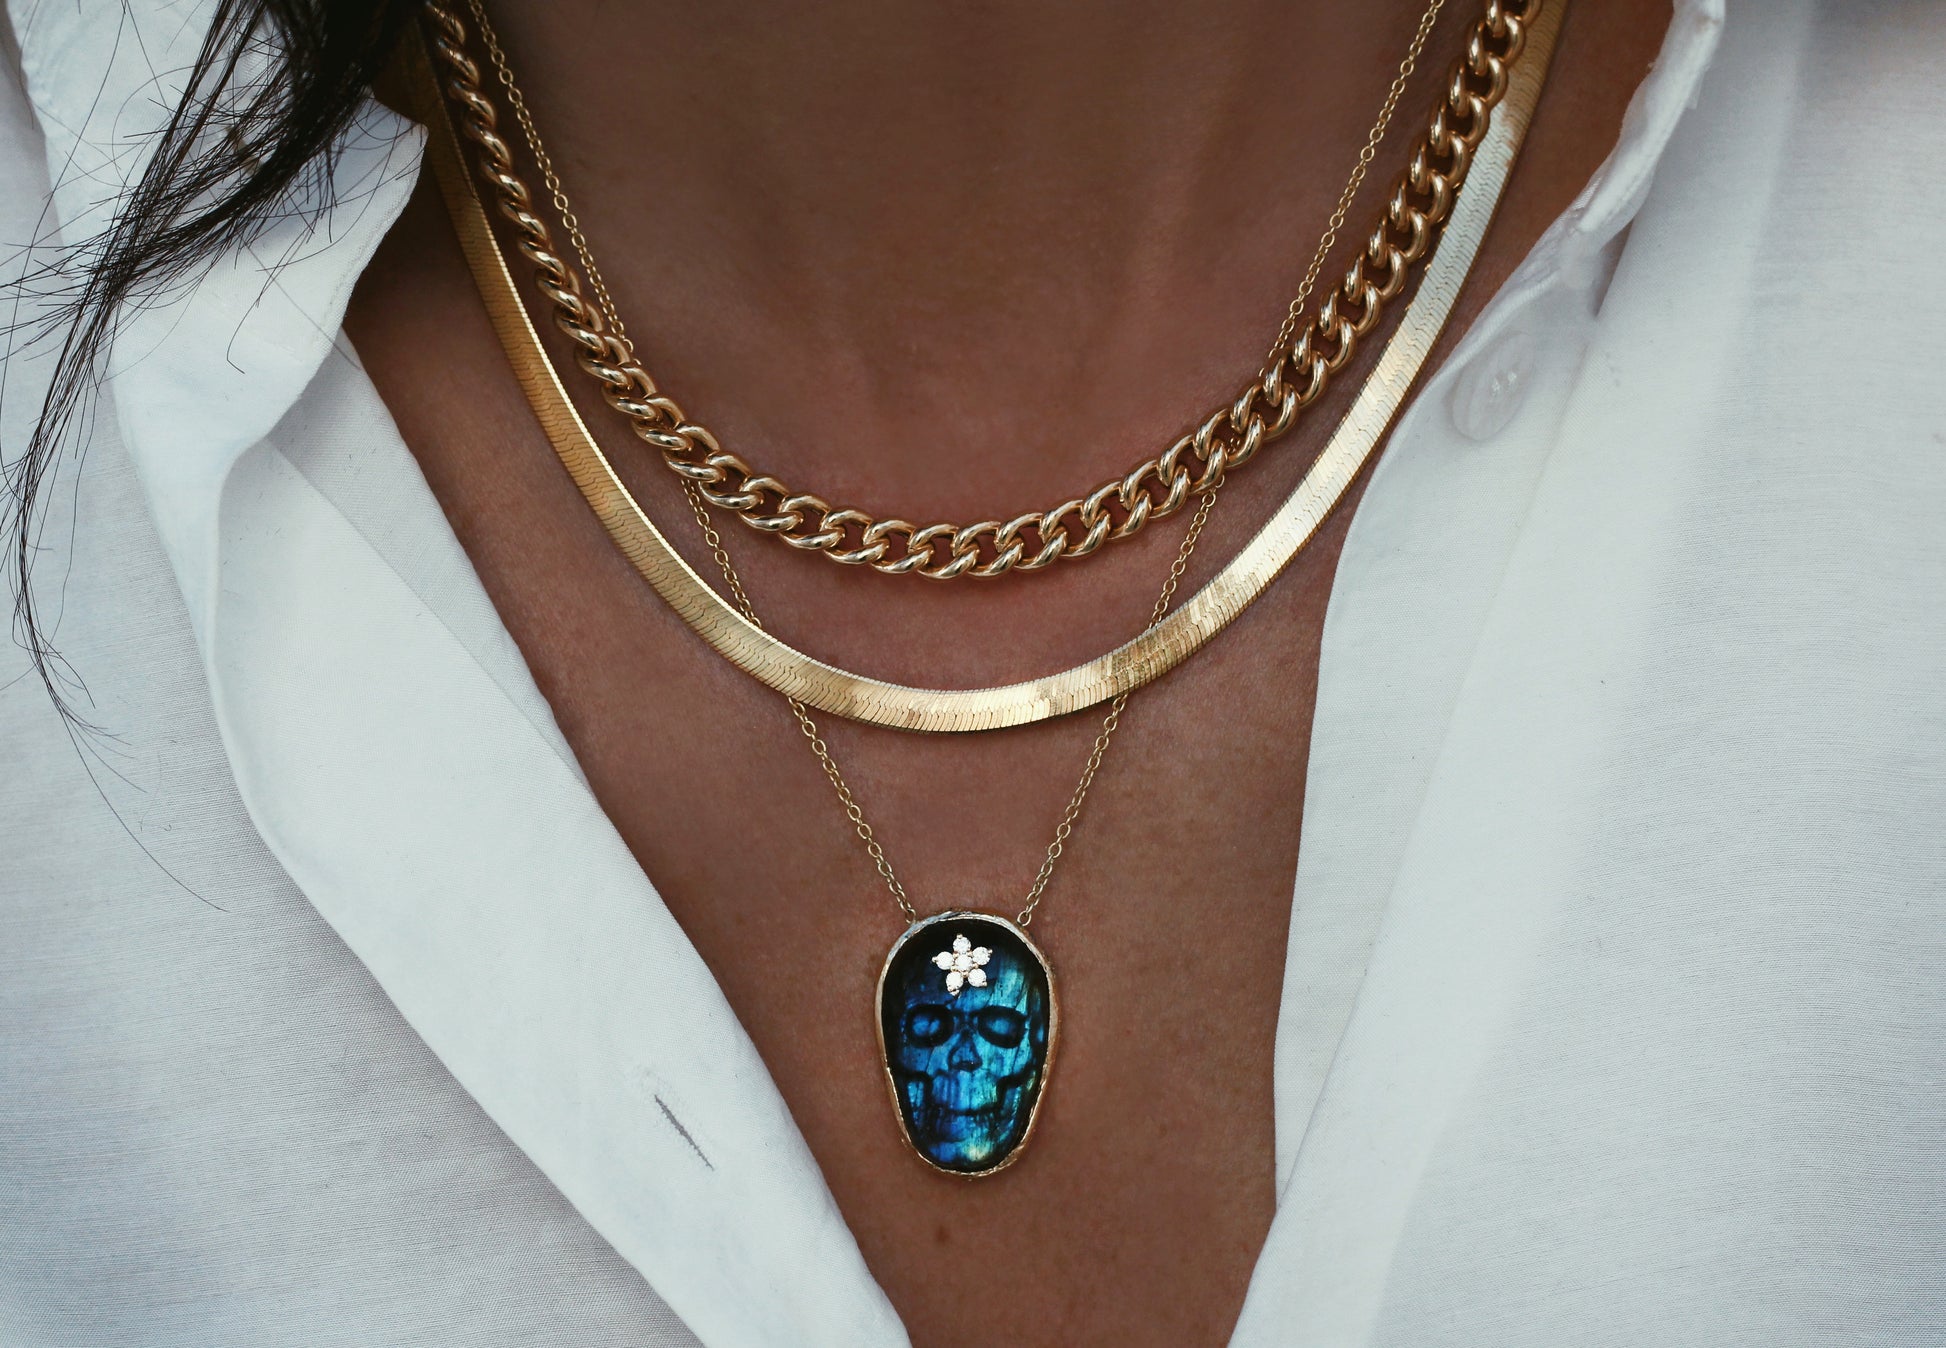 herringbone chain necklaces